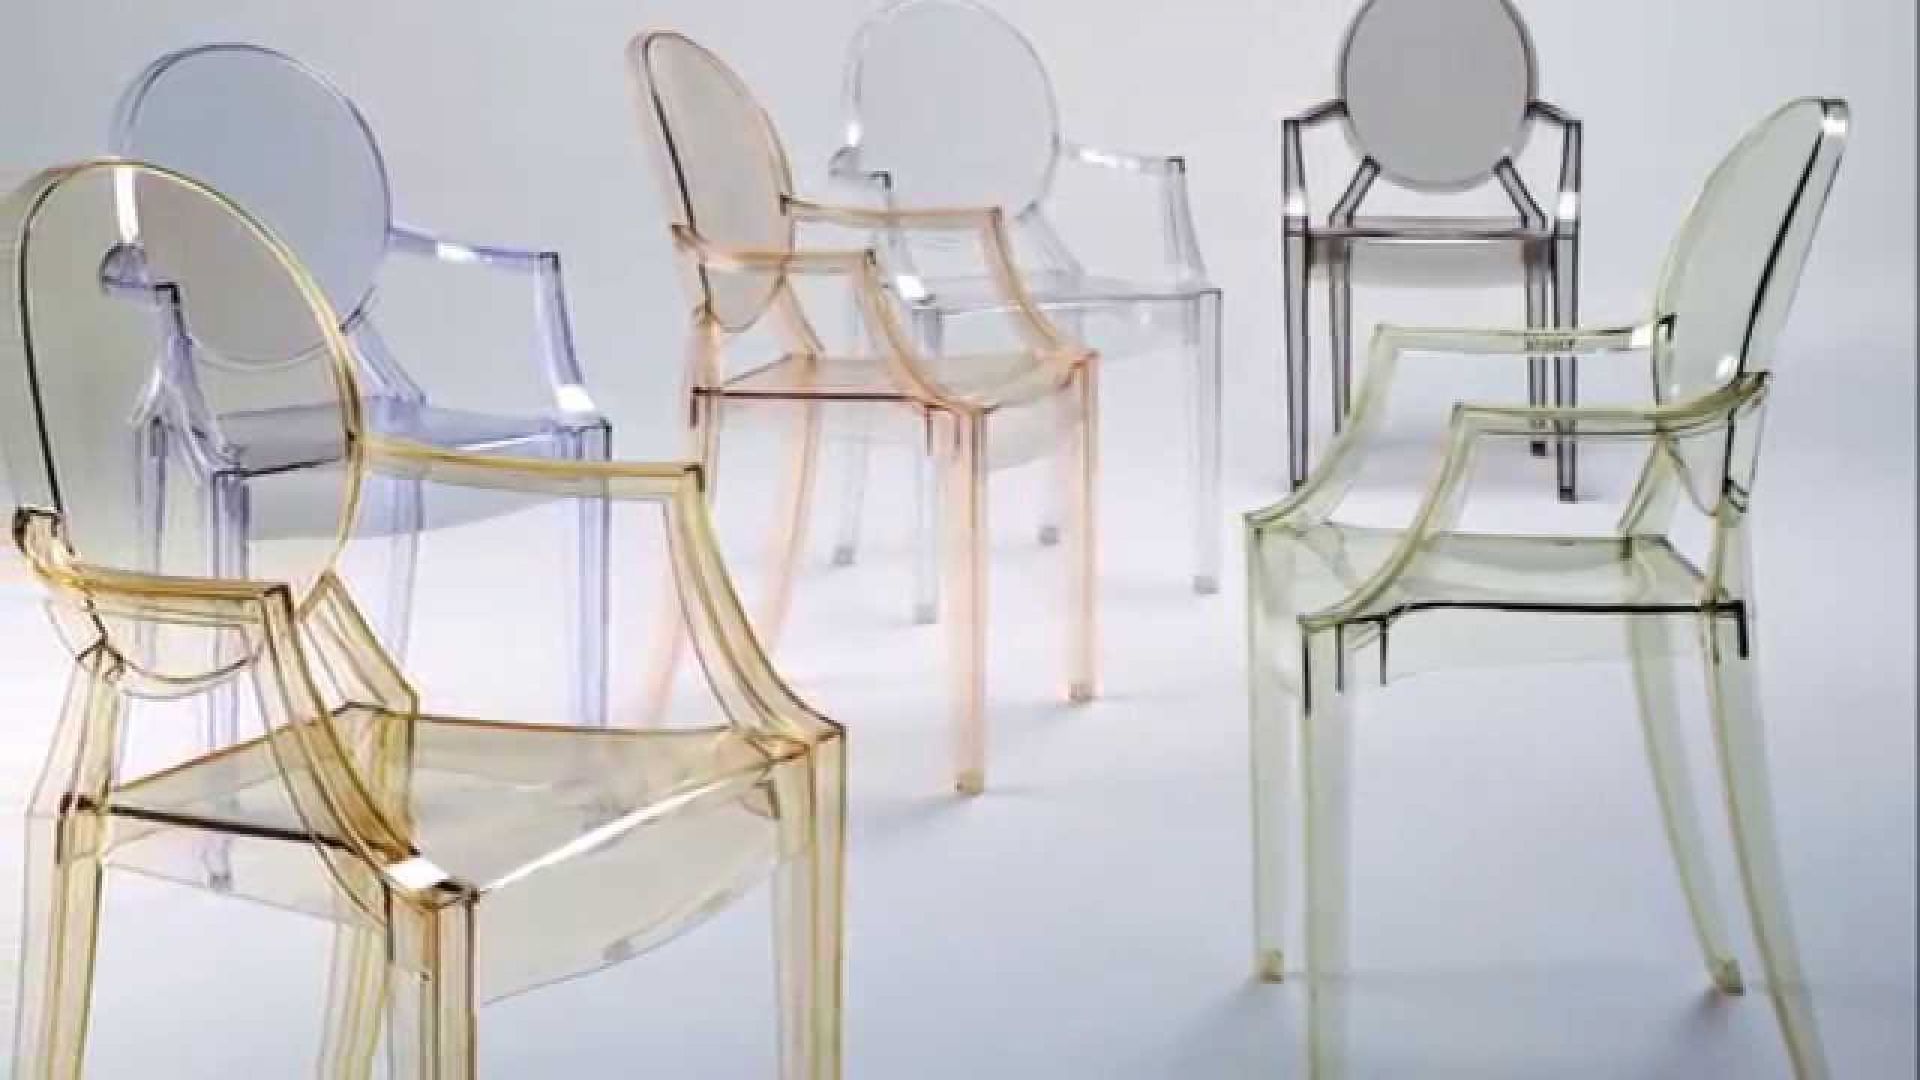 Krzesła z serii 